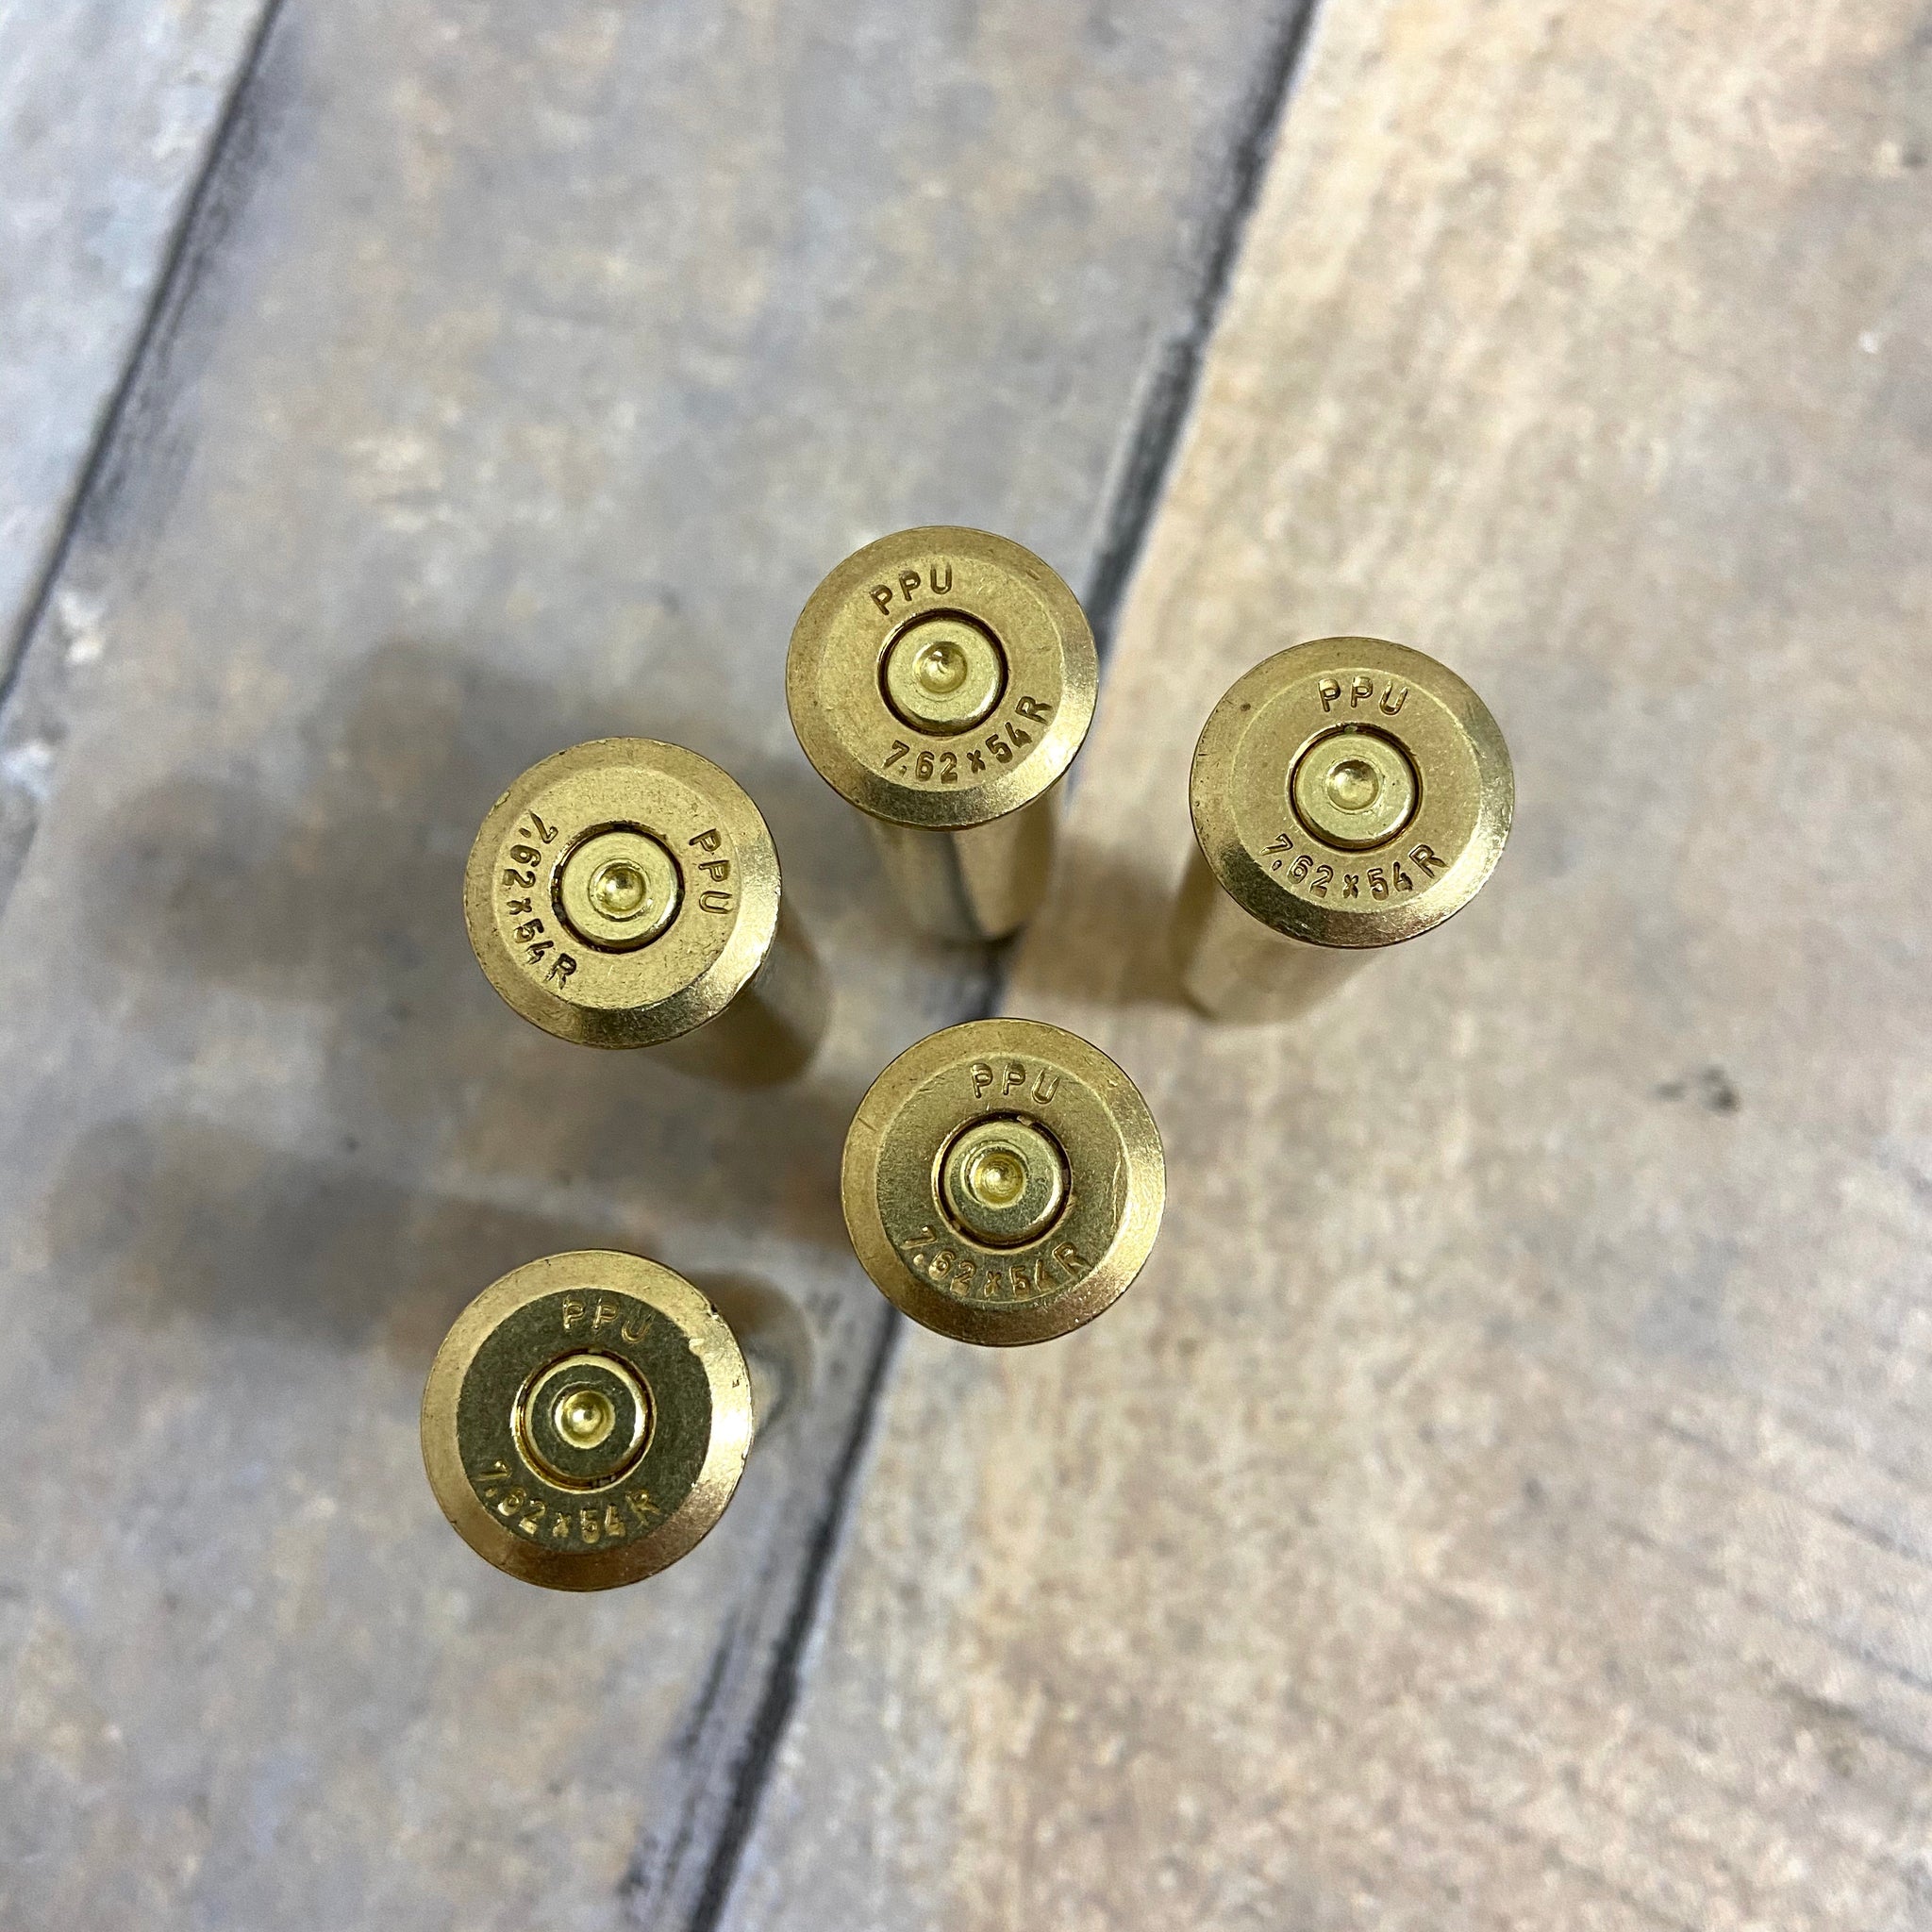 Empty Rifle Shell Casings by Stocksy Contributor Matthew Spaulding -  Stocksy